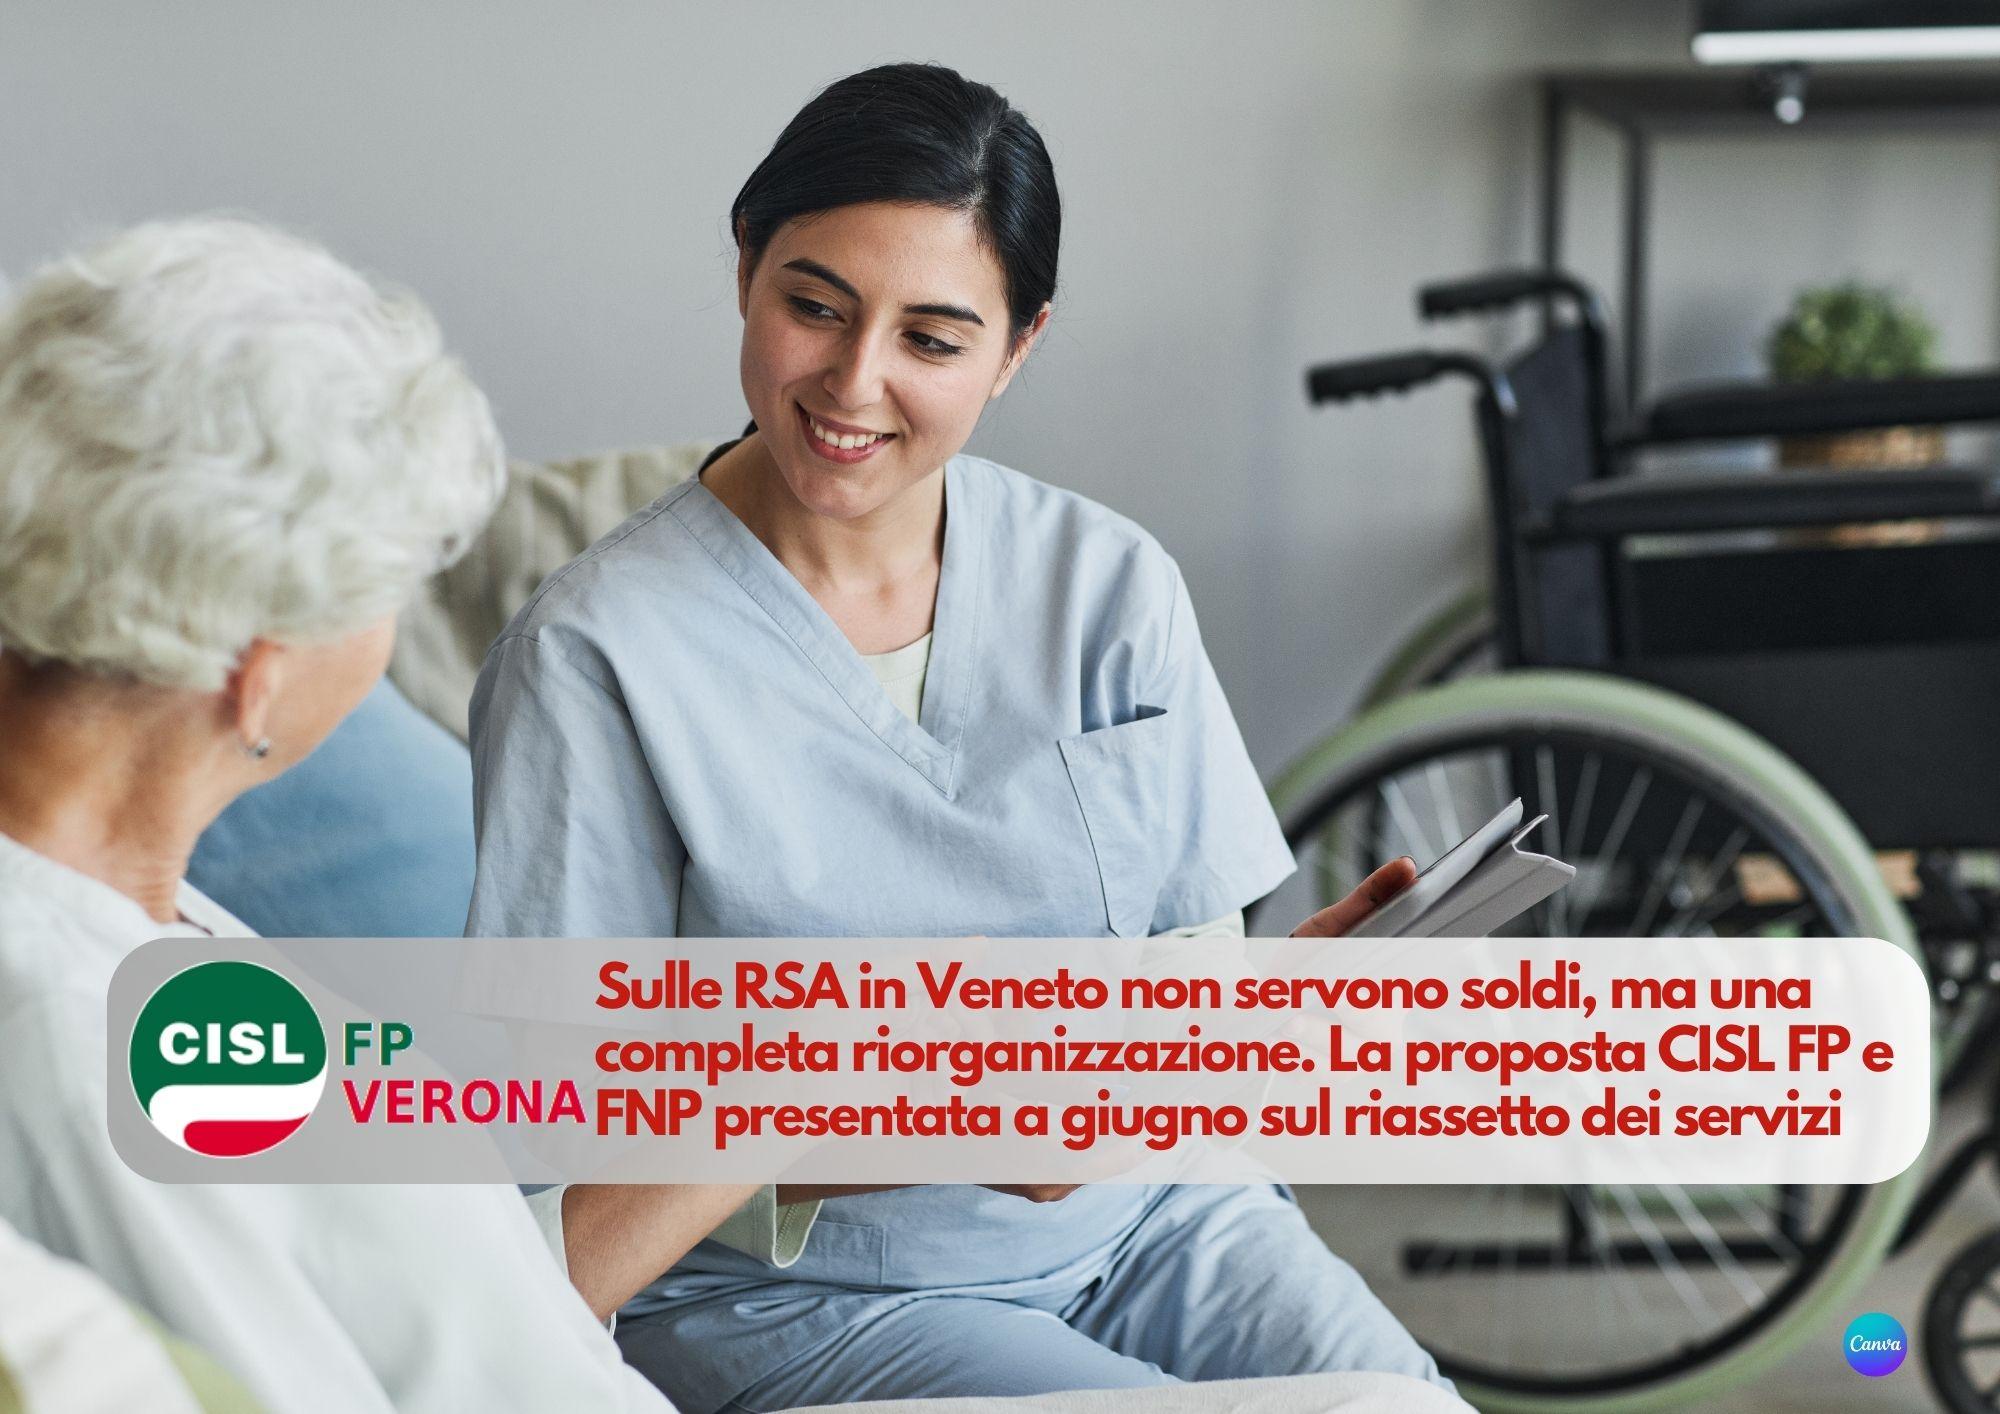 CISL FP Verona. RSA: non servono soldi, ma una completa riorganizzazione. La proposta CISL FP e FNP